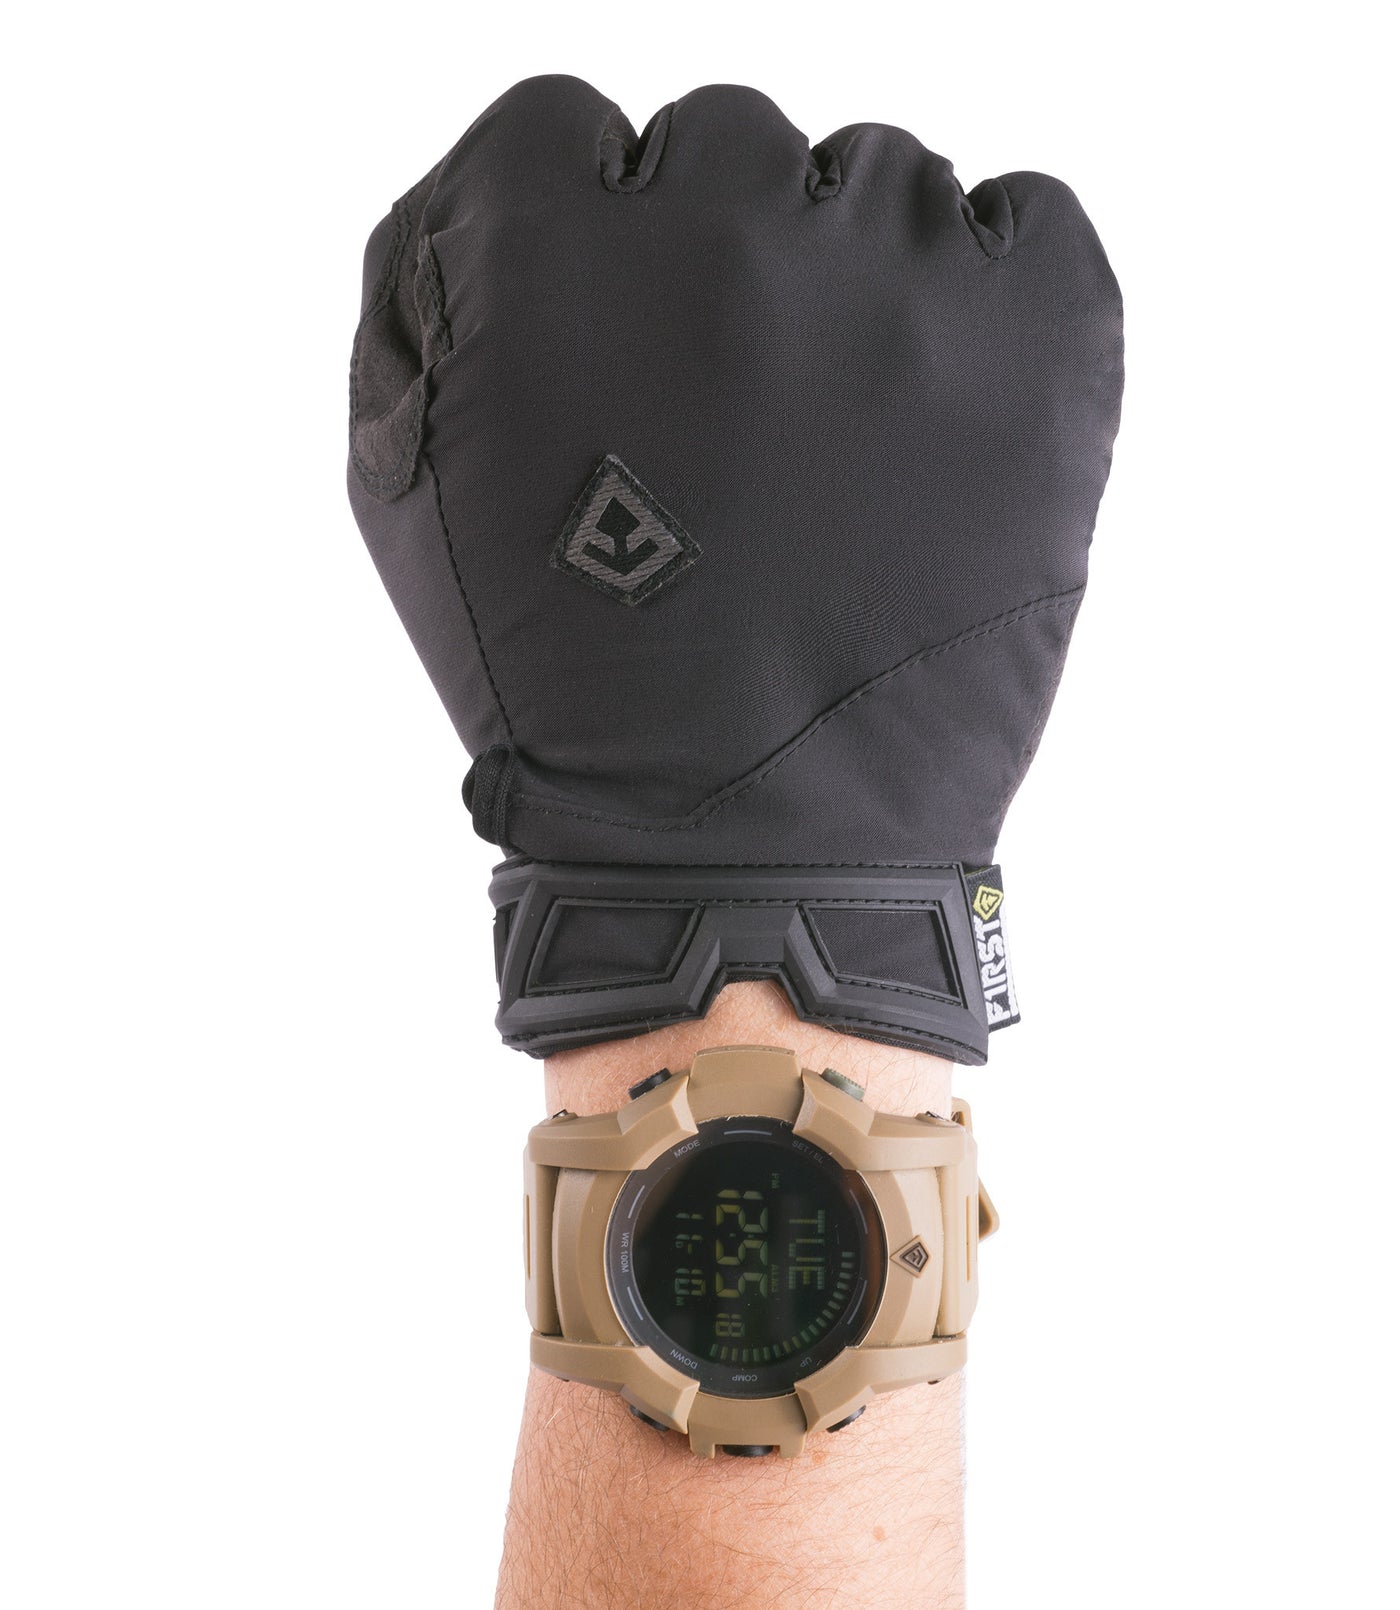 Men's Slash Patrol Glove in Black in a fist